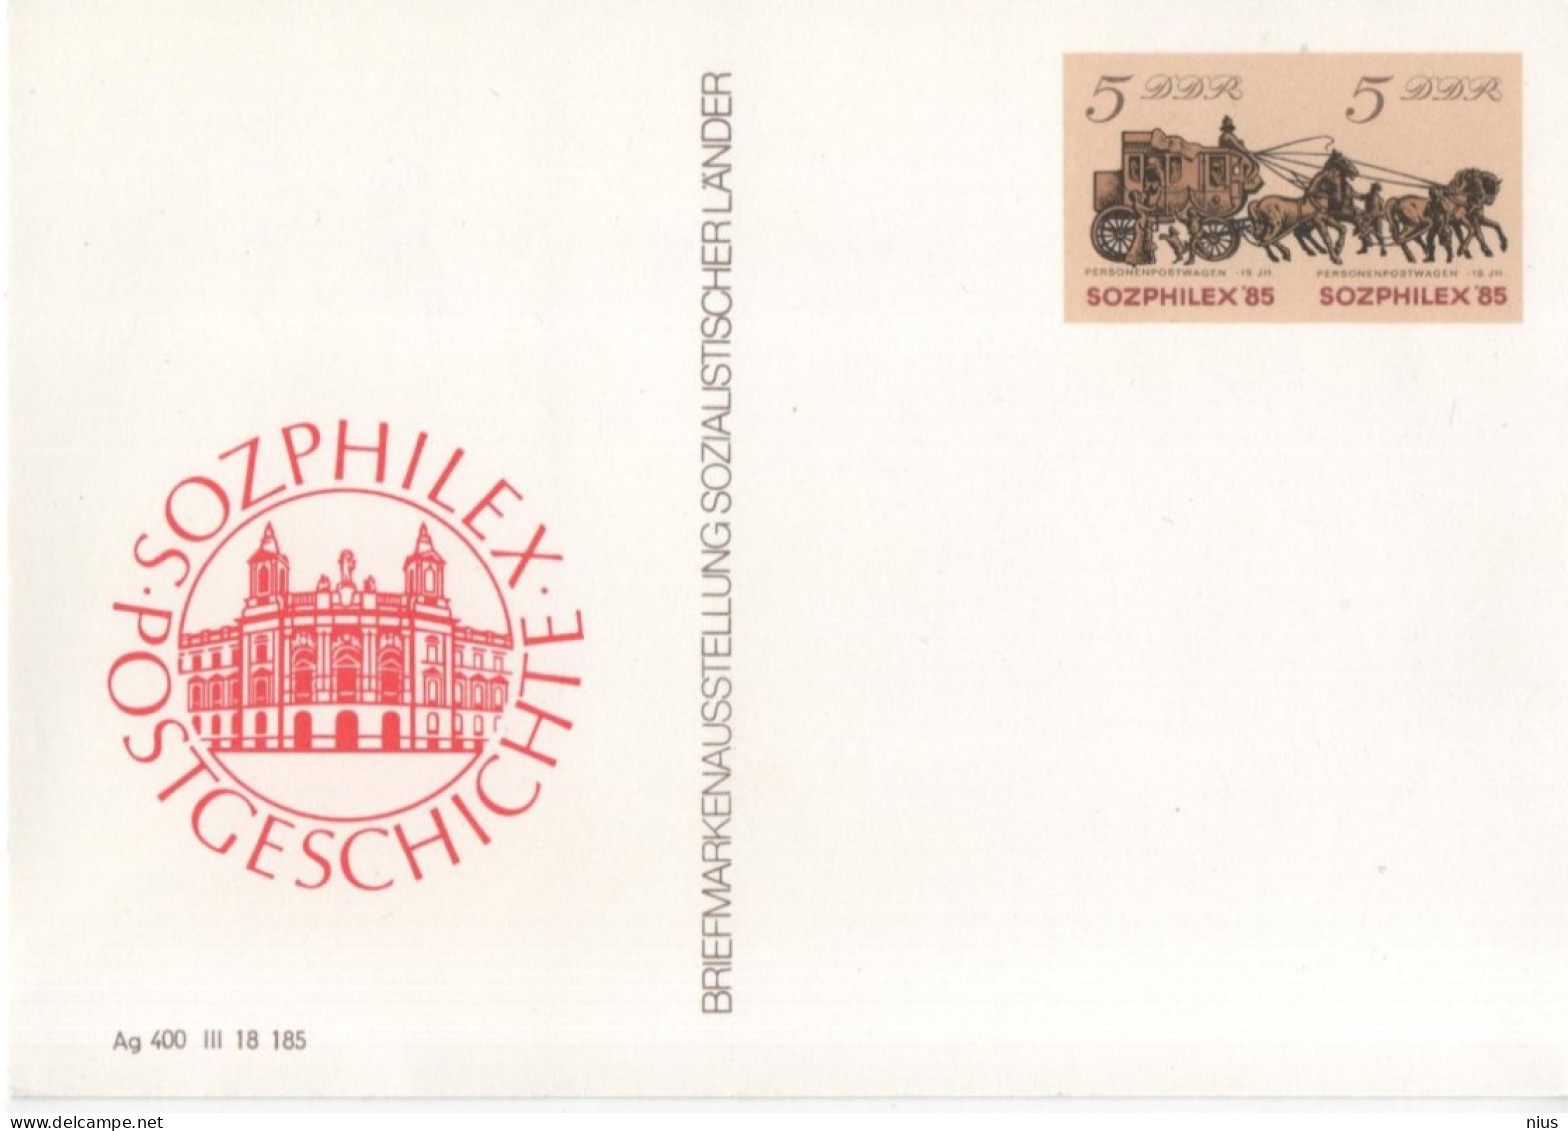 Germany DDR 1985 Briefmarkenausstellung Sozialistischer Lander Stamp Exhibition Of Socialist Countries, SOZPHILEX'85 - Postcards - Mint